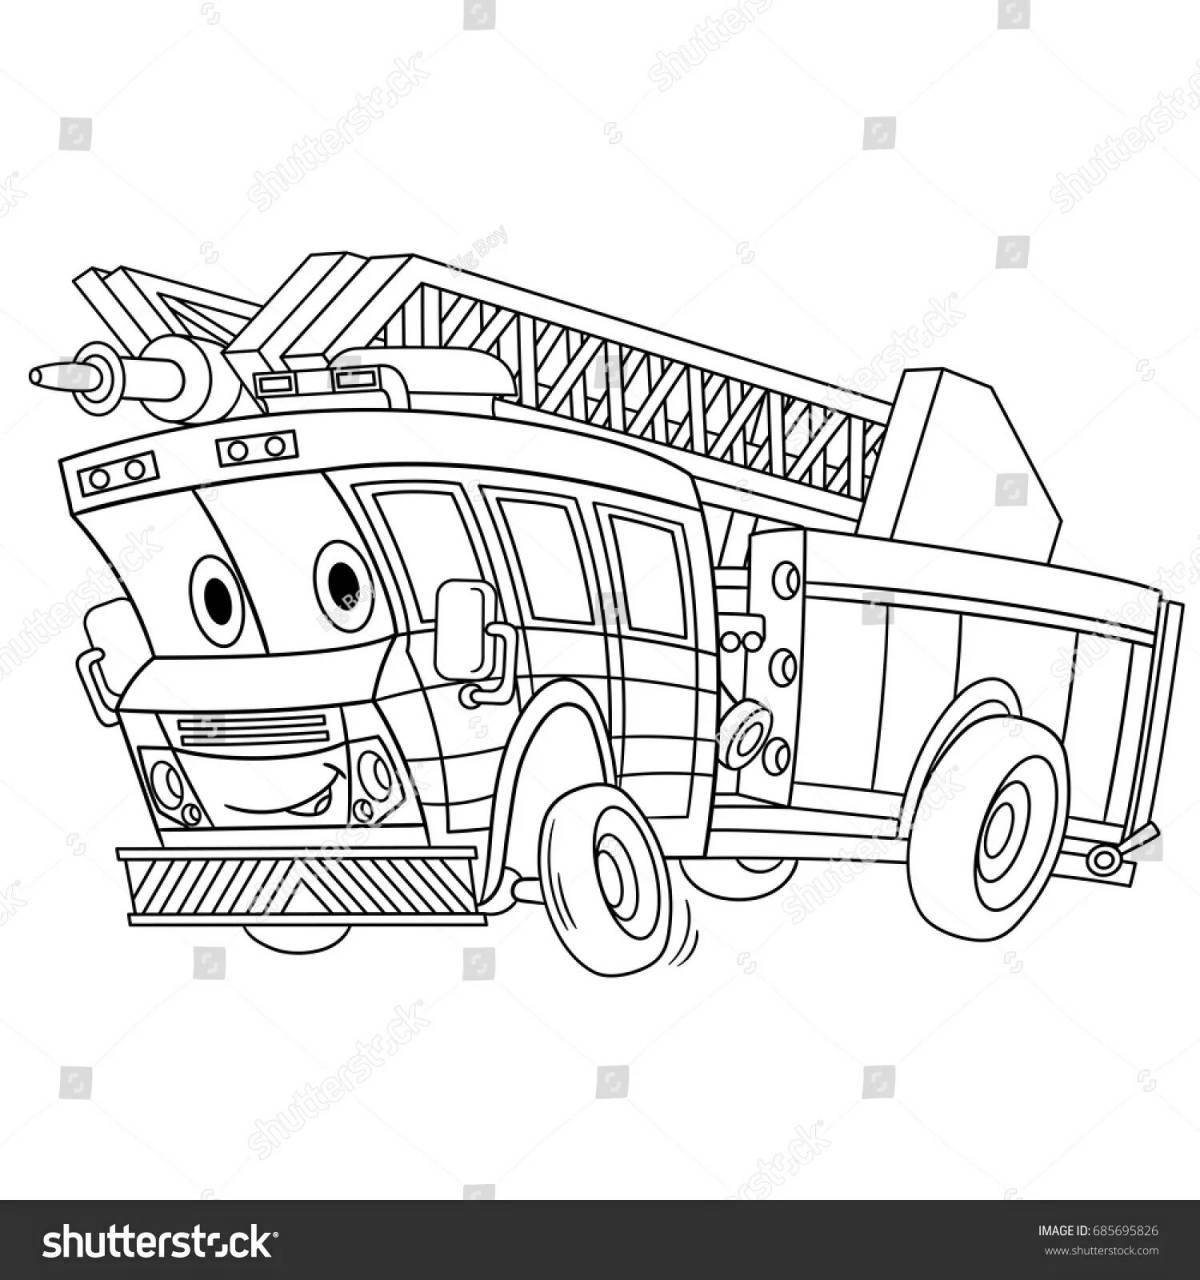 Раскраска яркая пожарная машина finley